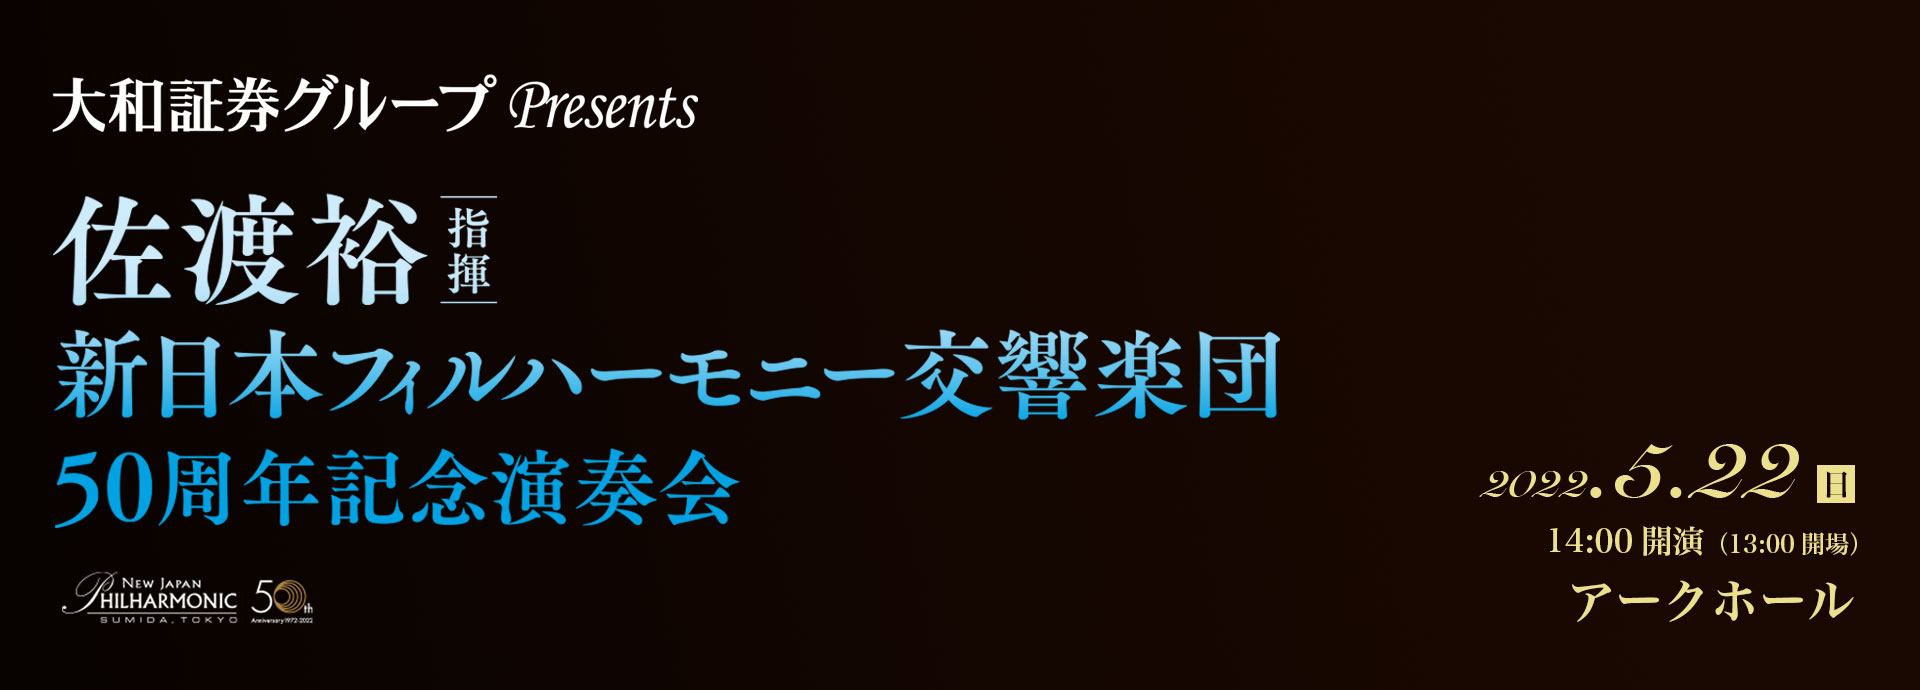 5/22 佐渡裕指揮 新日本フィルハーモニー交響楽団50周年記念演奏会